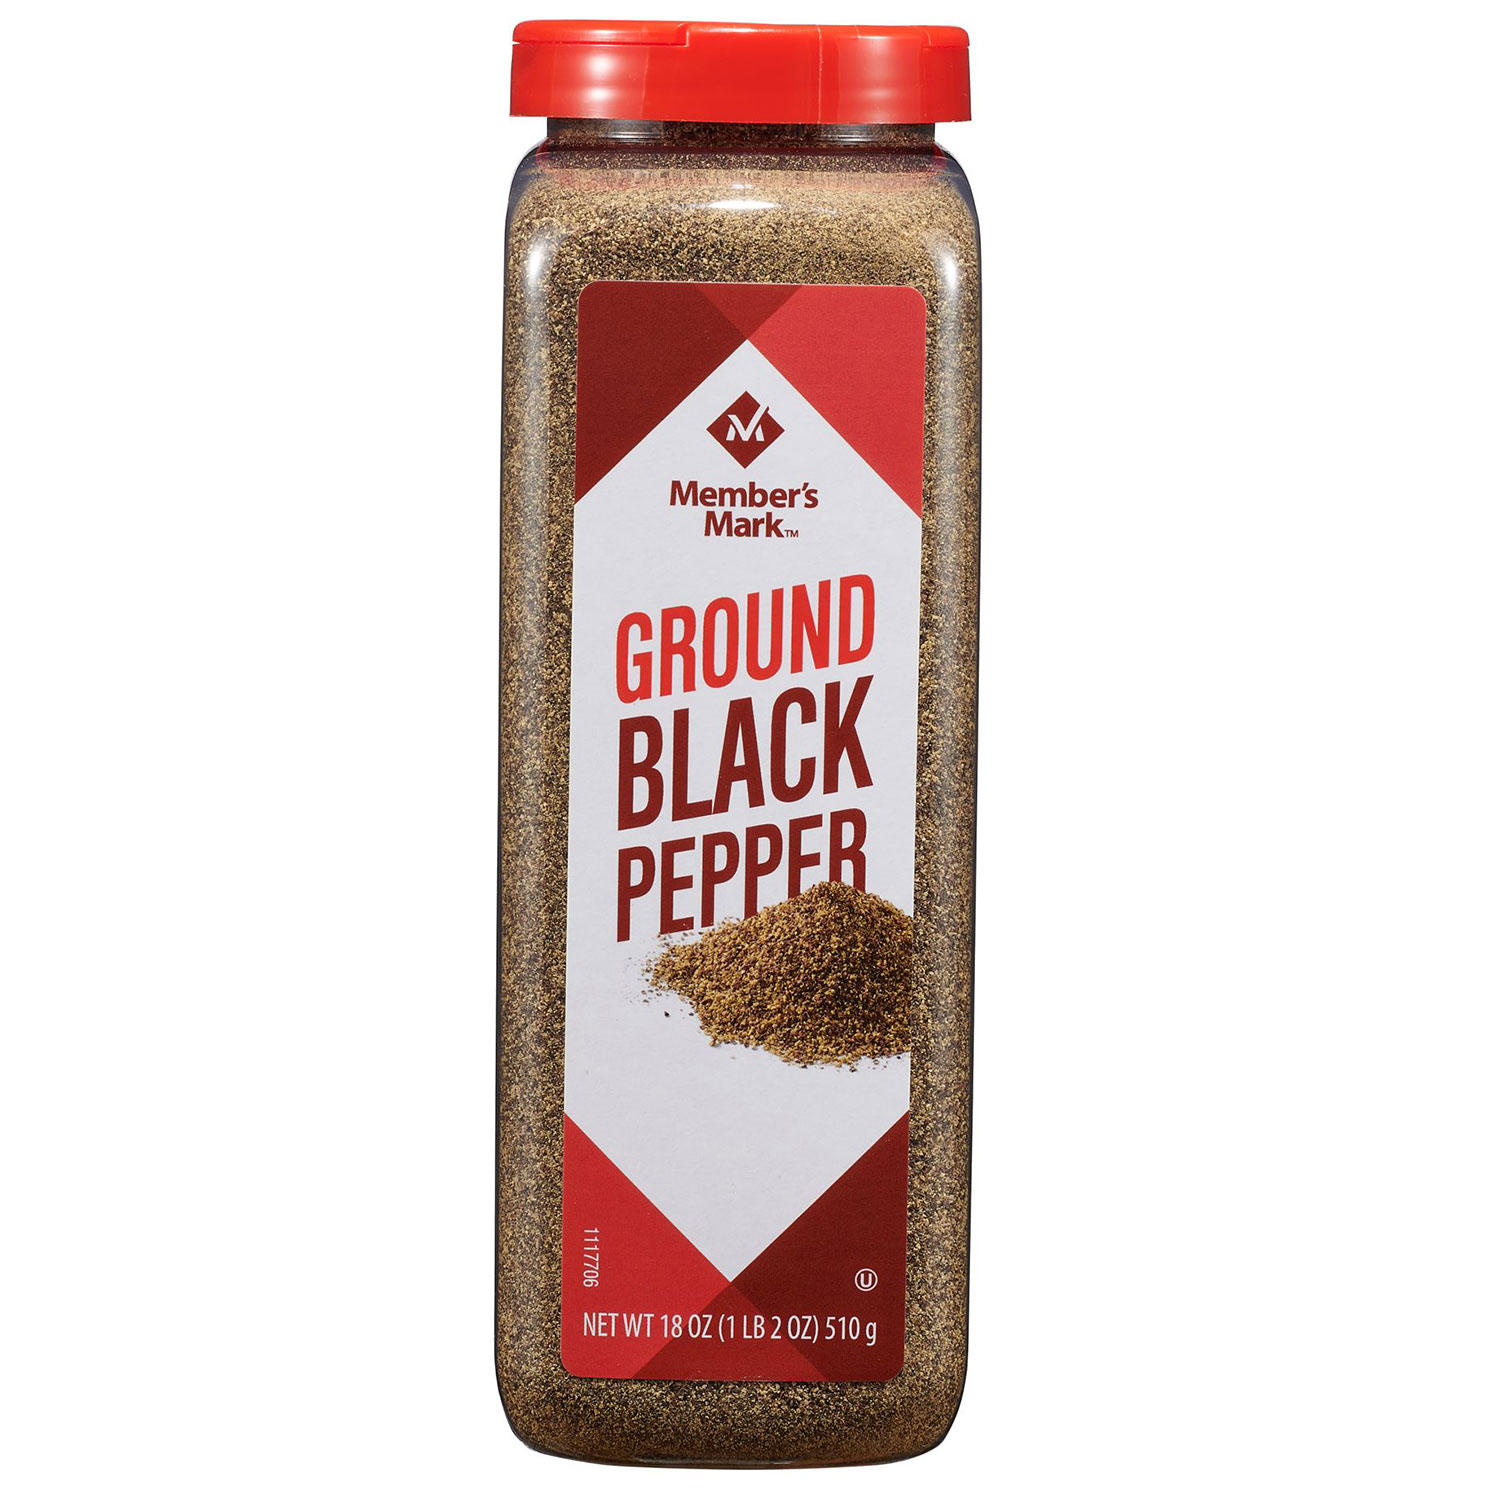 Member's Mark Ground Black Pepper